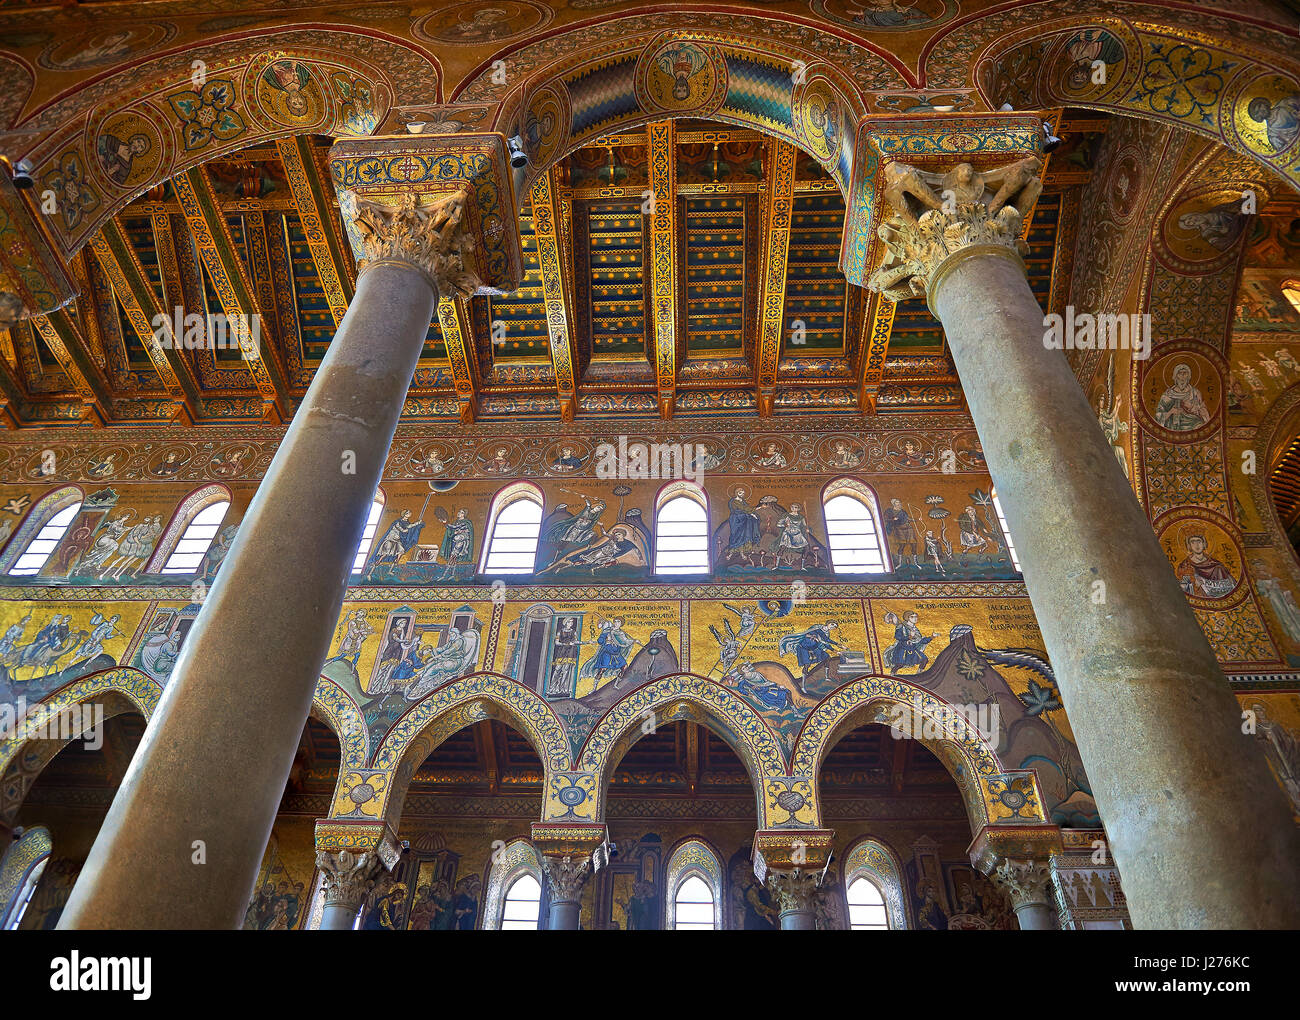 Los mosaicos de la catedral medieval de Monreale Norman-Byzantine, provincia de Palermo, Sicilia, Italia. Foto de stock